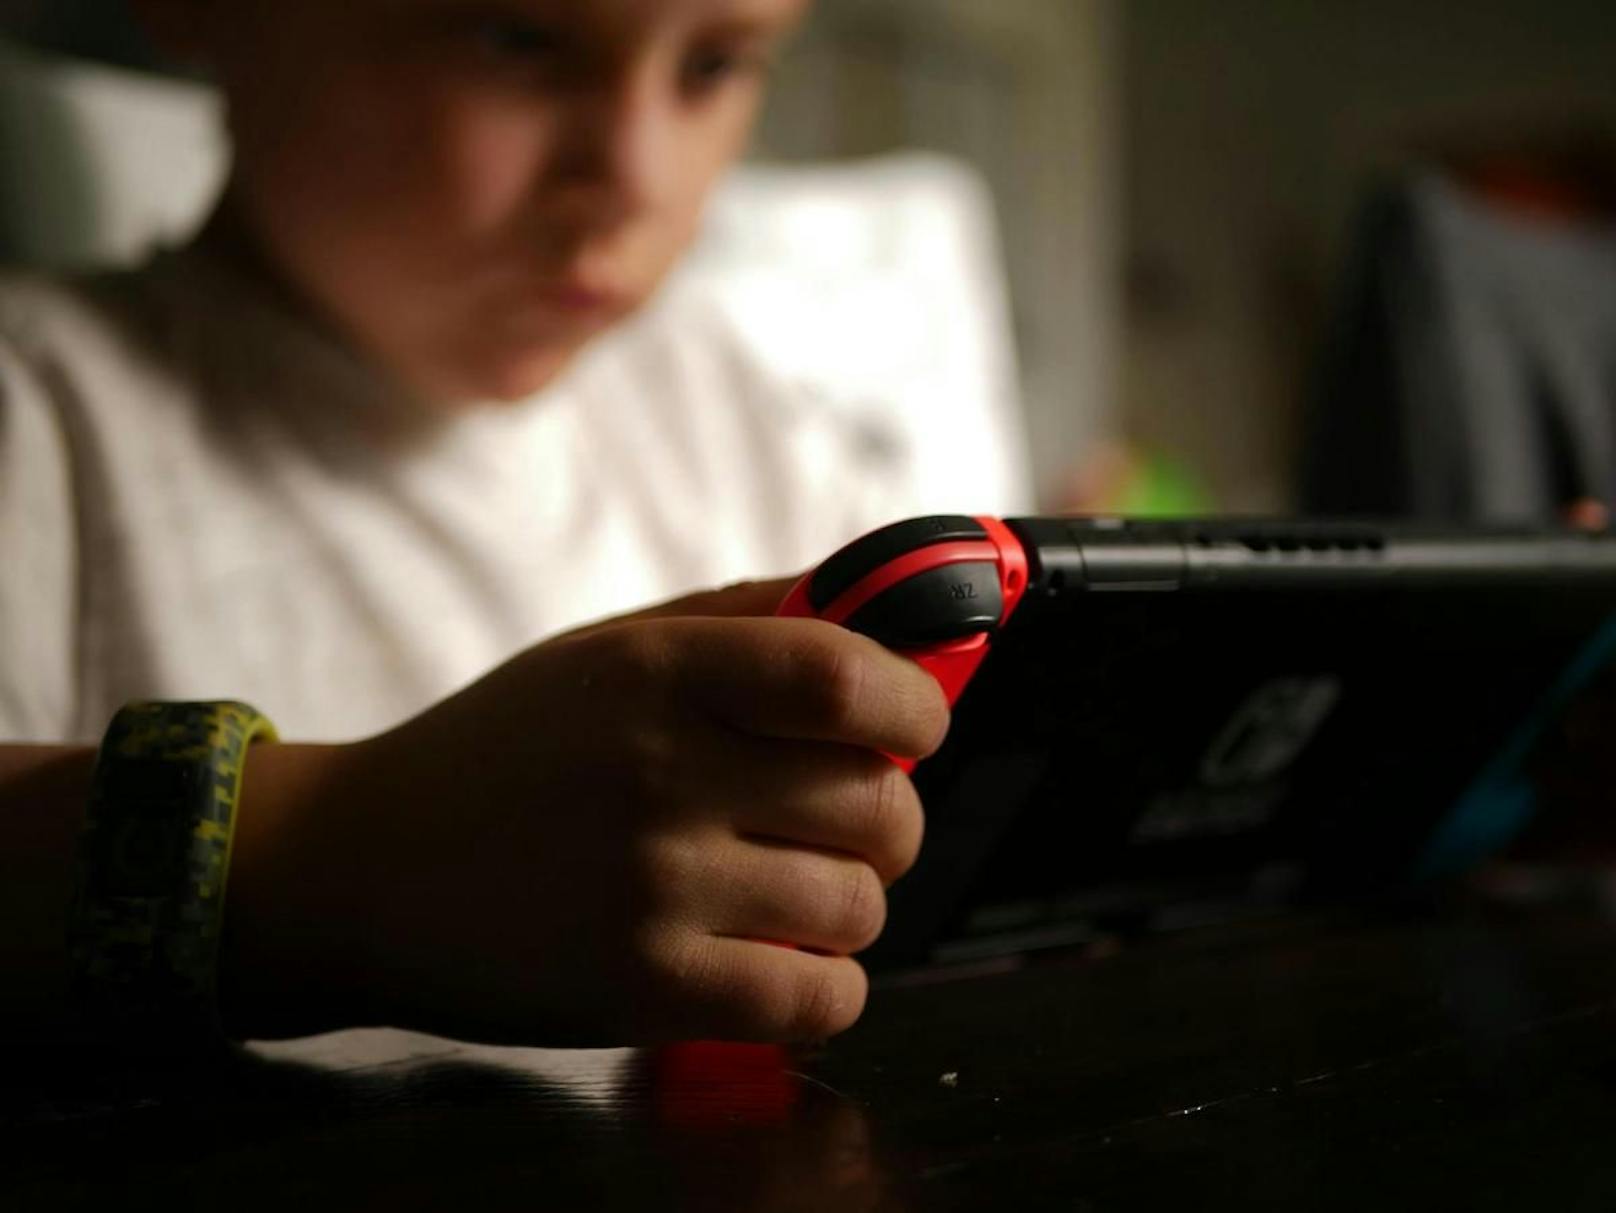 Grund dafür sei, die "körperliche und geistige Gesundheit" der Jugendlichen zu schützen, indem "exzessive Nutzung von Online-Spielen" verhindert werde.